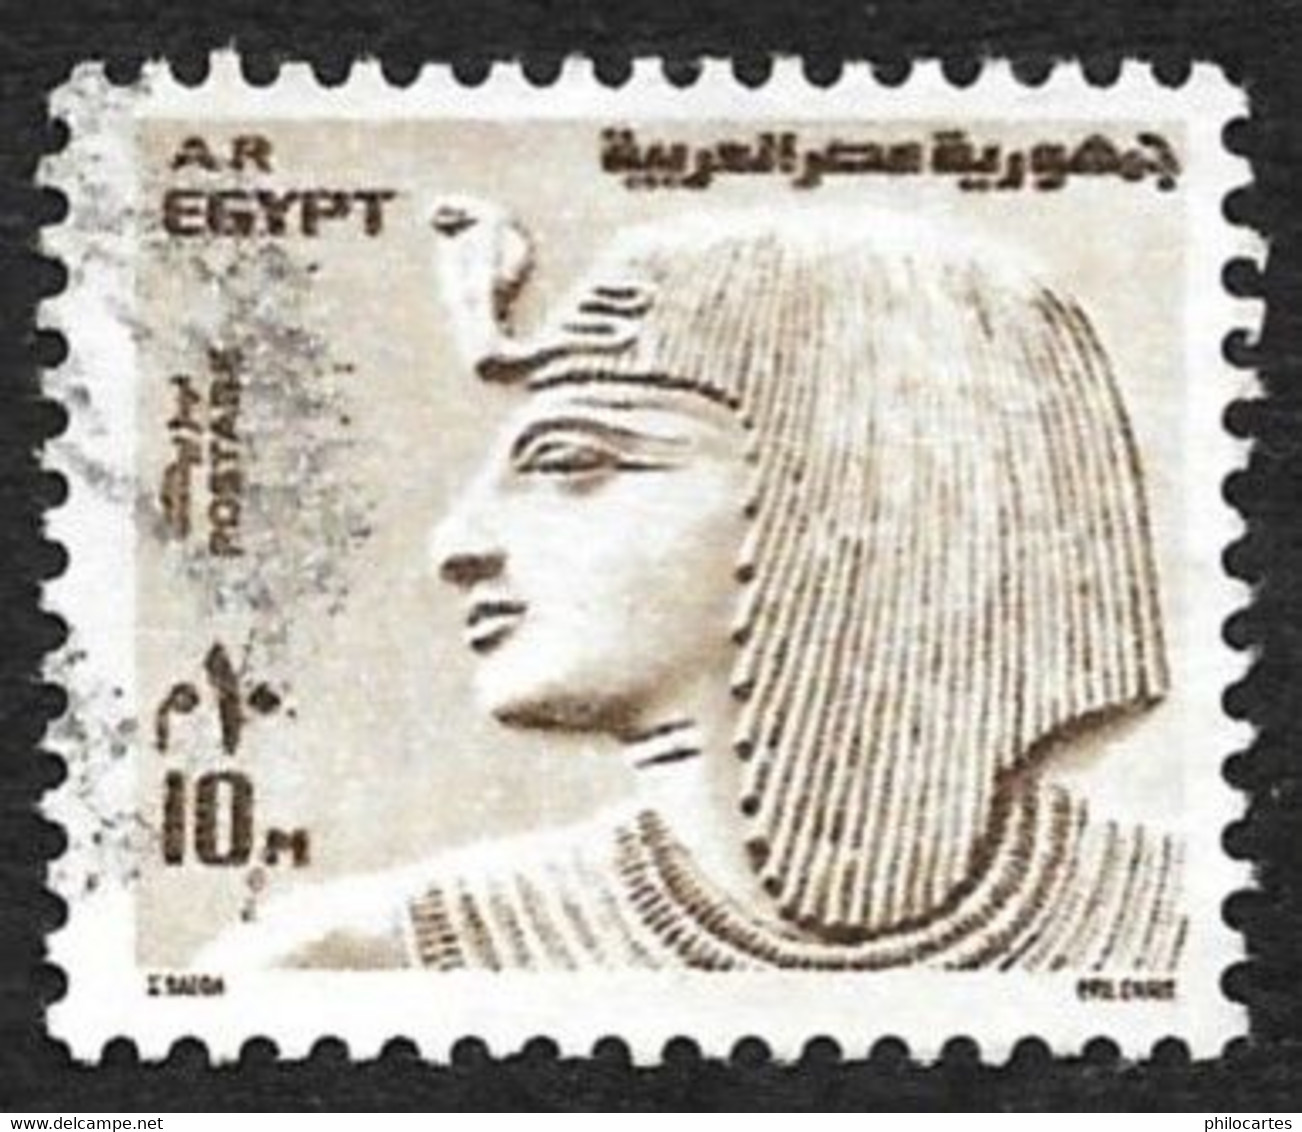 EGYPTE 1973  -  YT 926  -  Sethi 1°   - Oblitéré - Usati